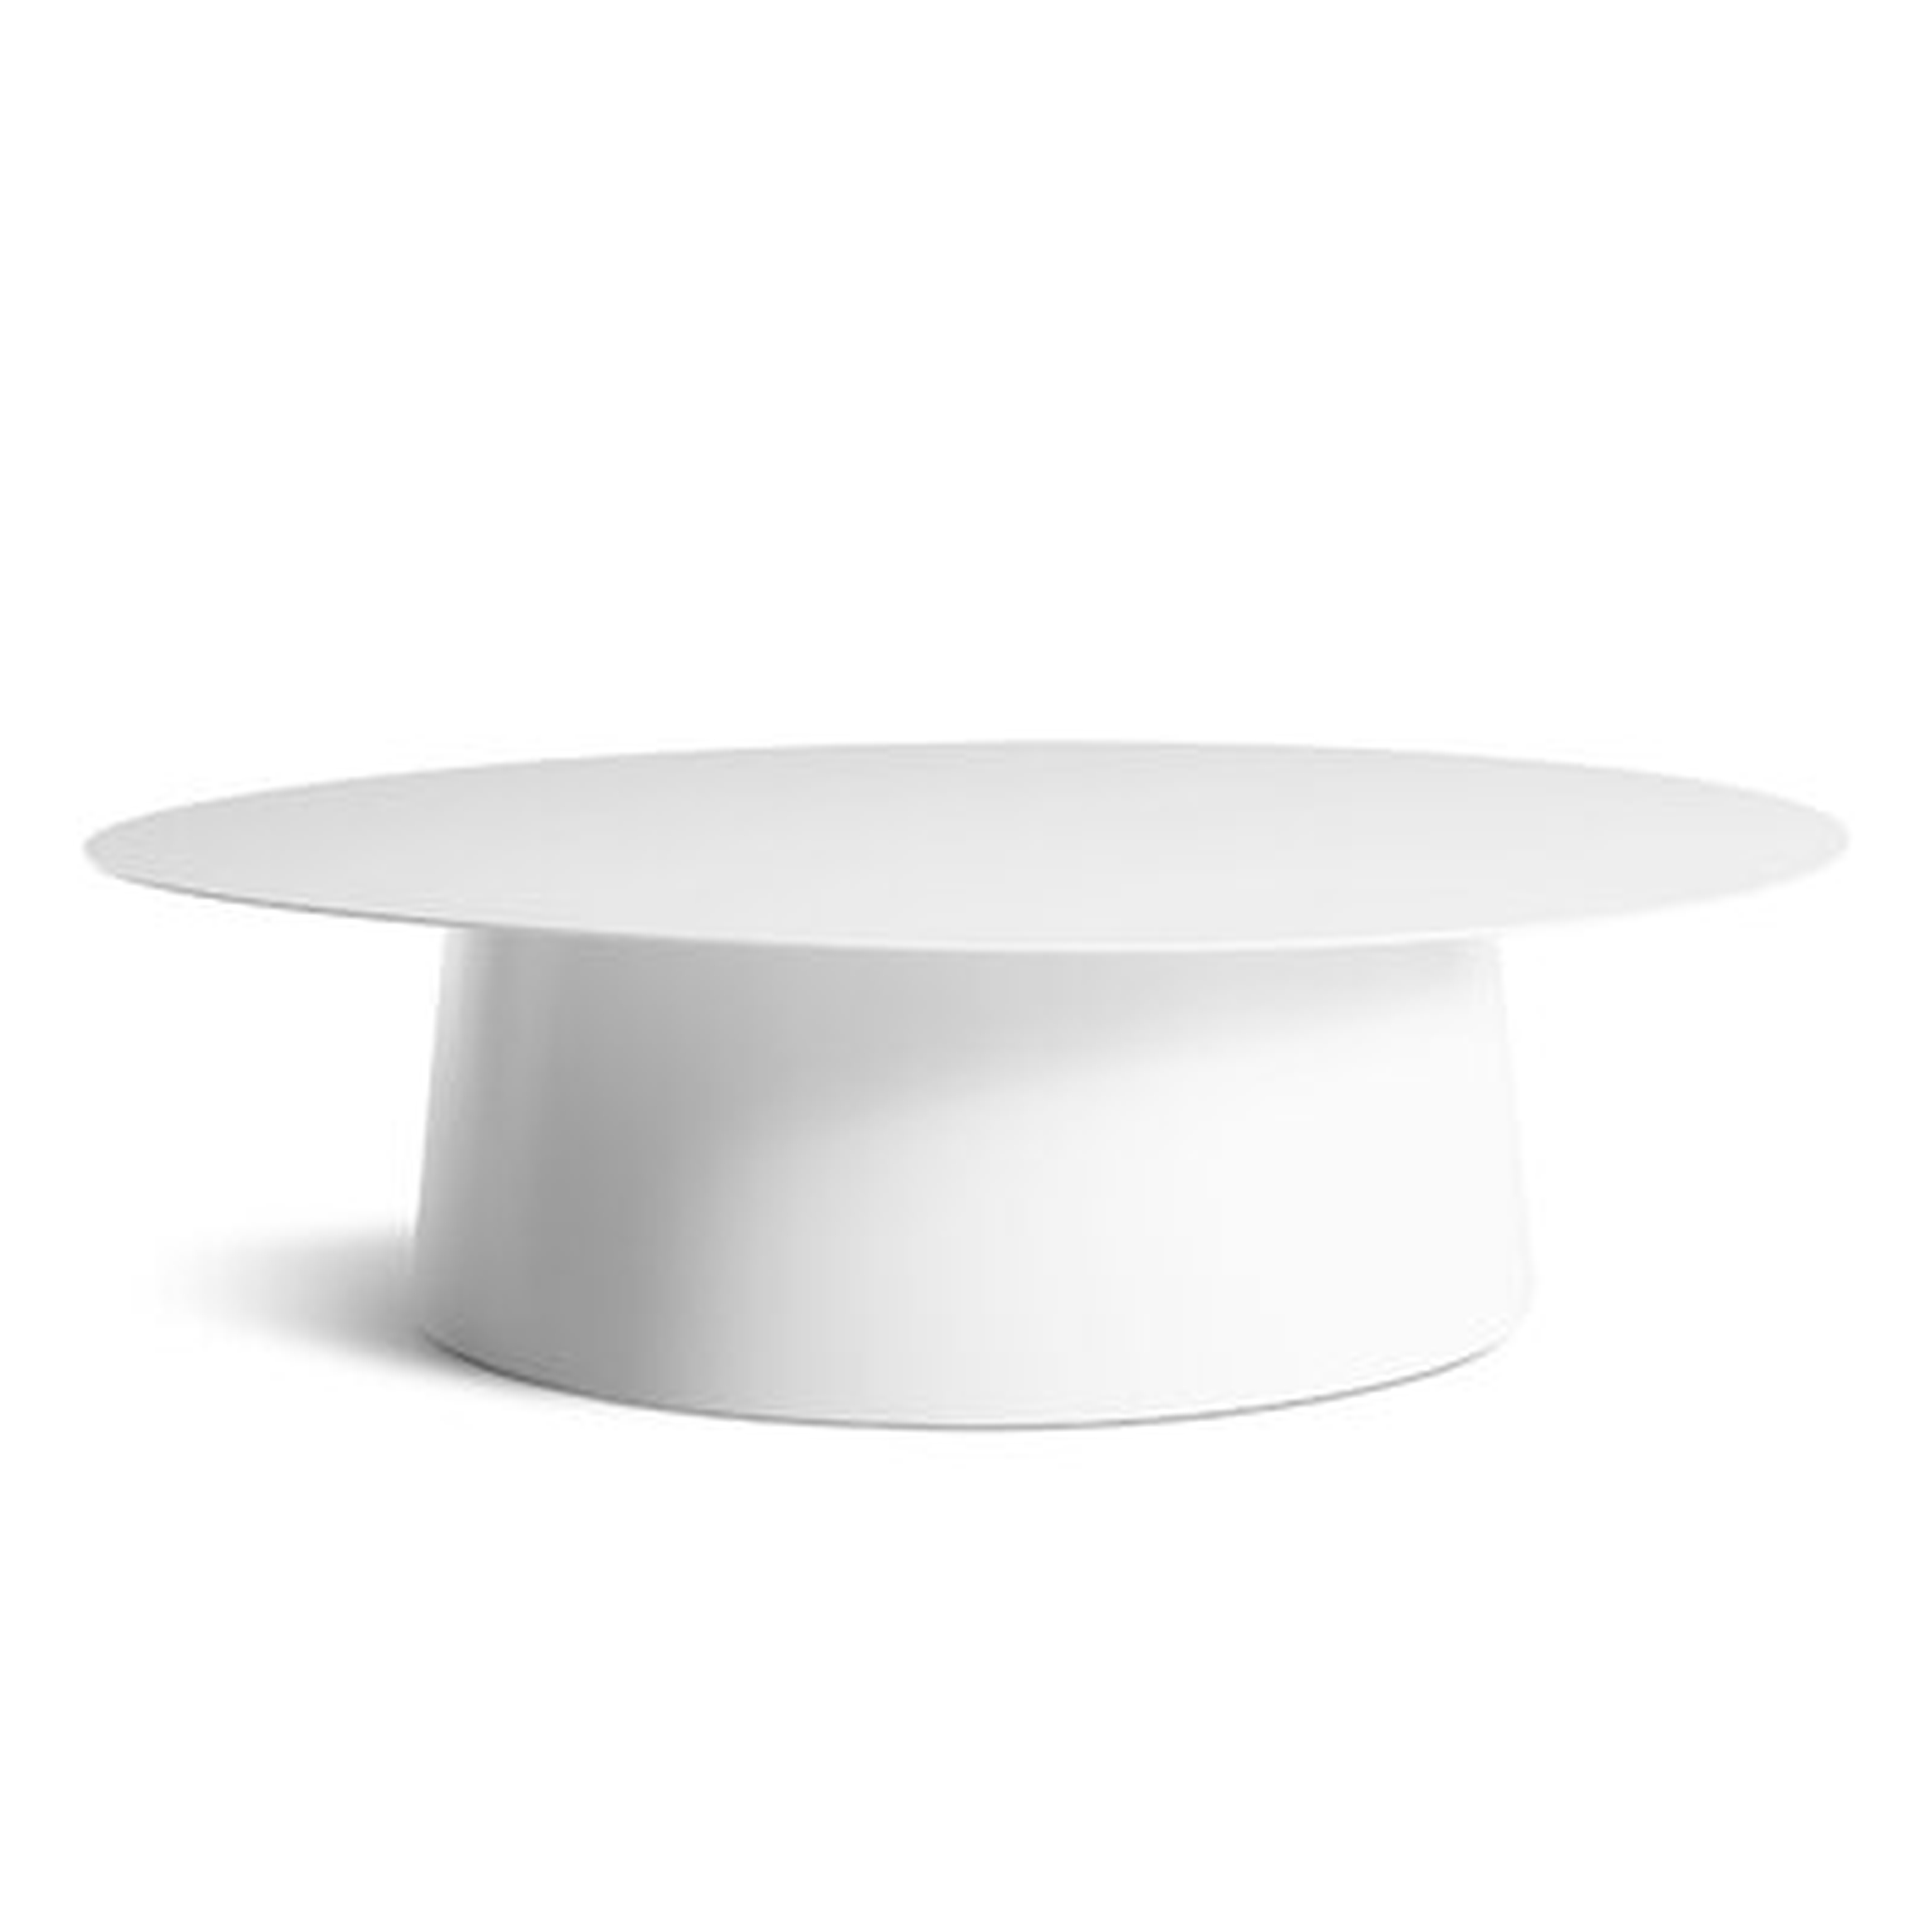 Pedestal Coffee Table - Wayfair